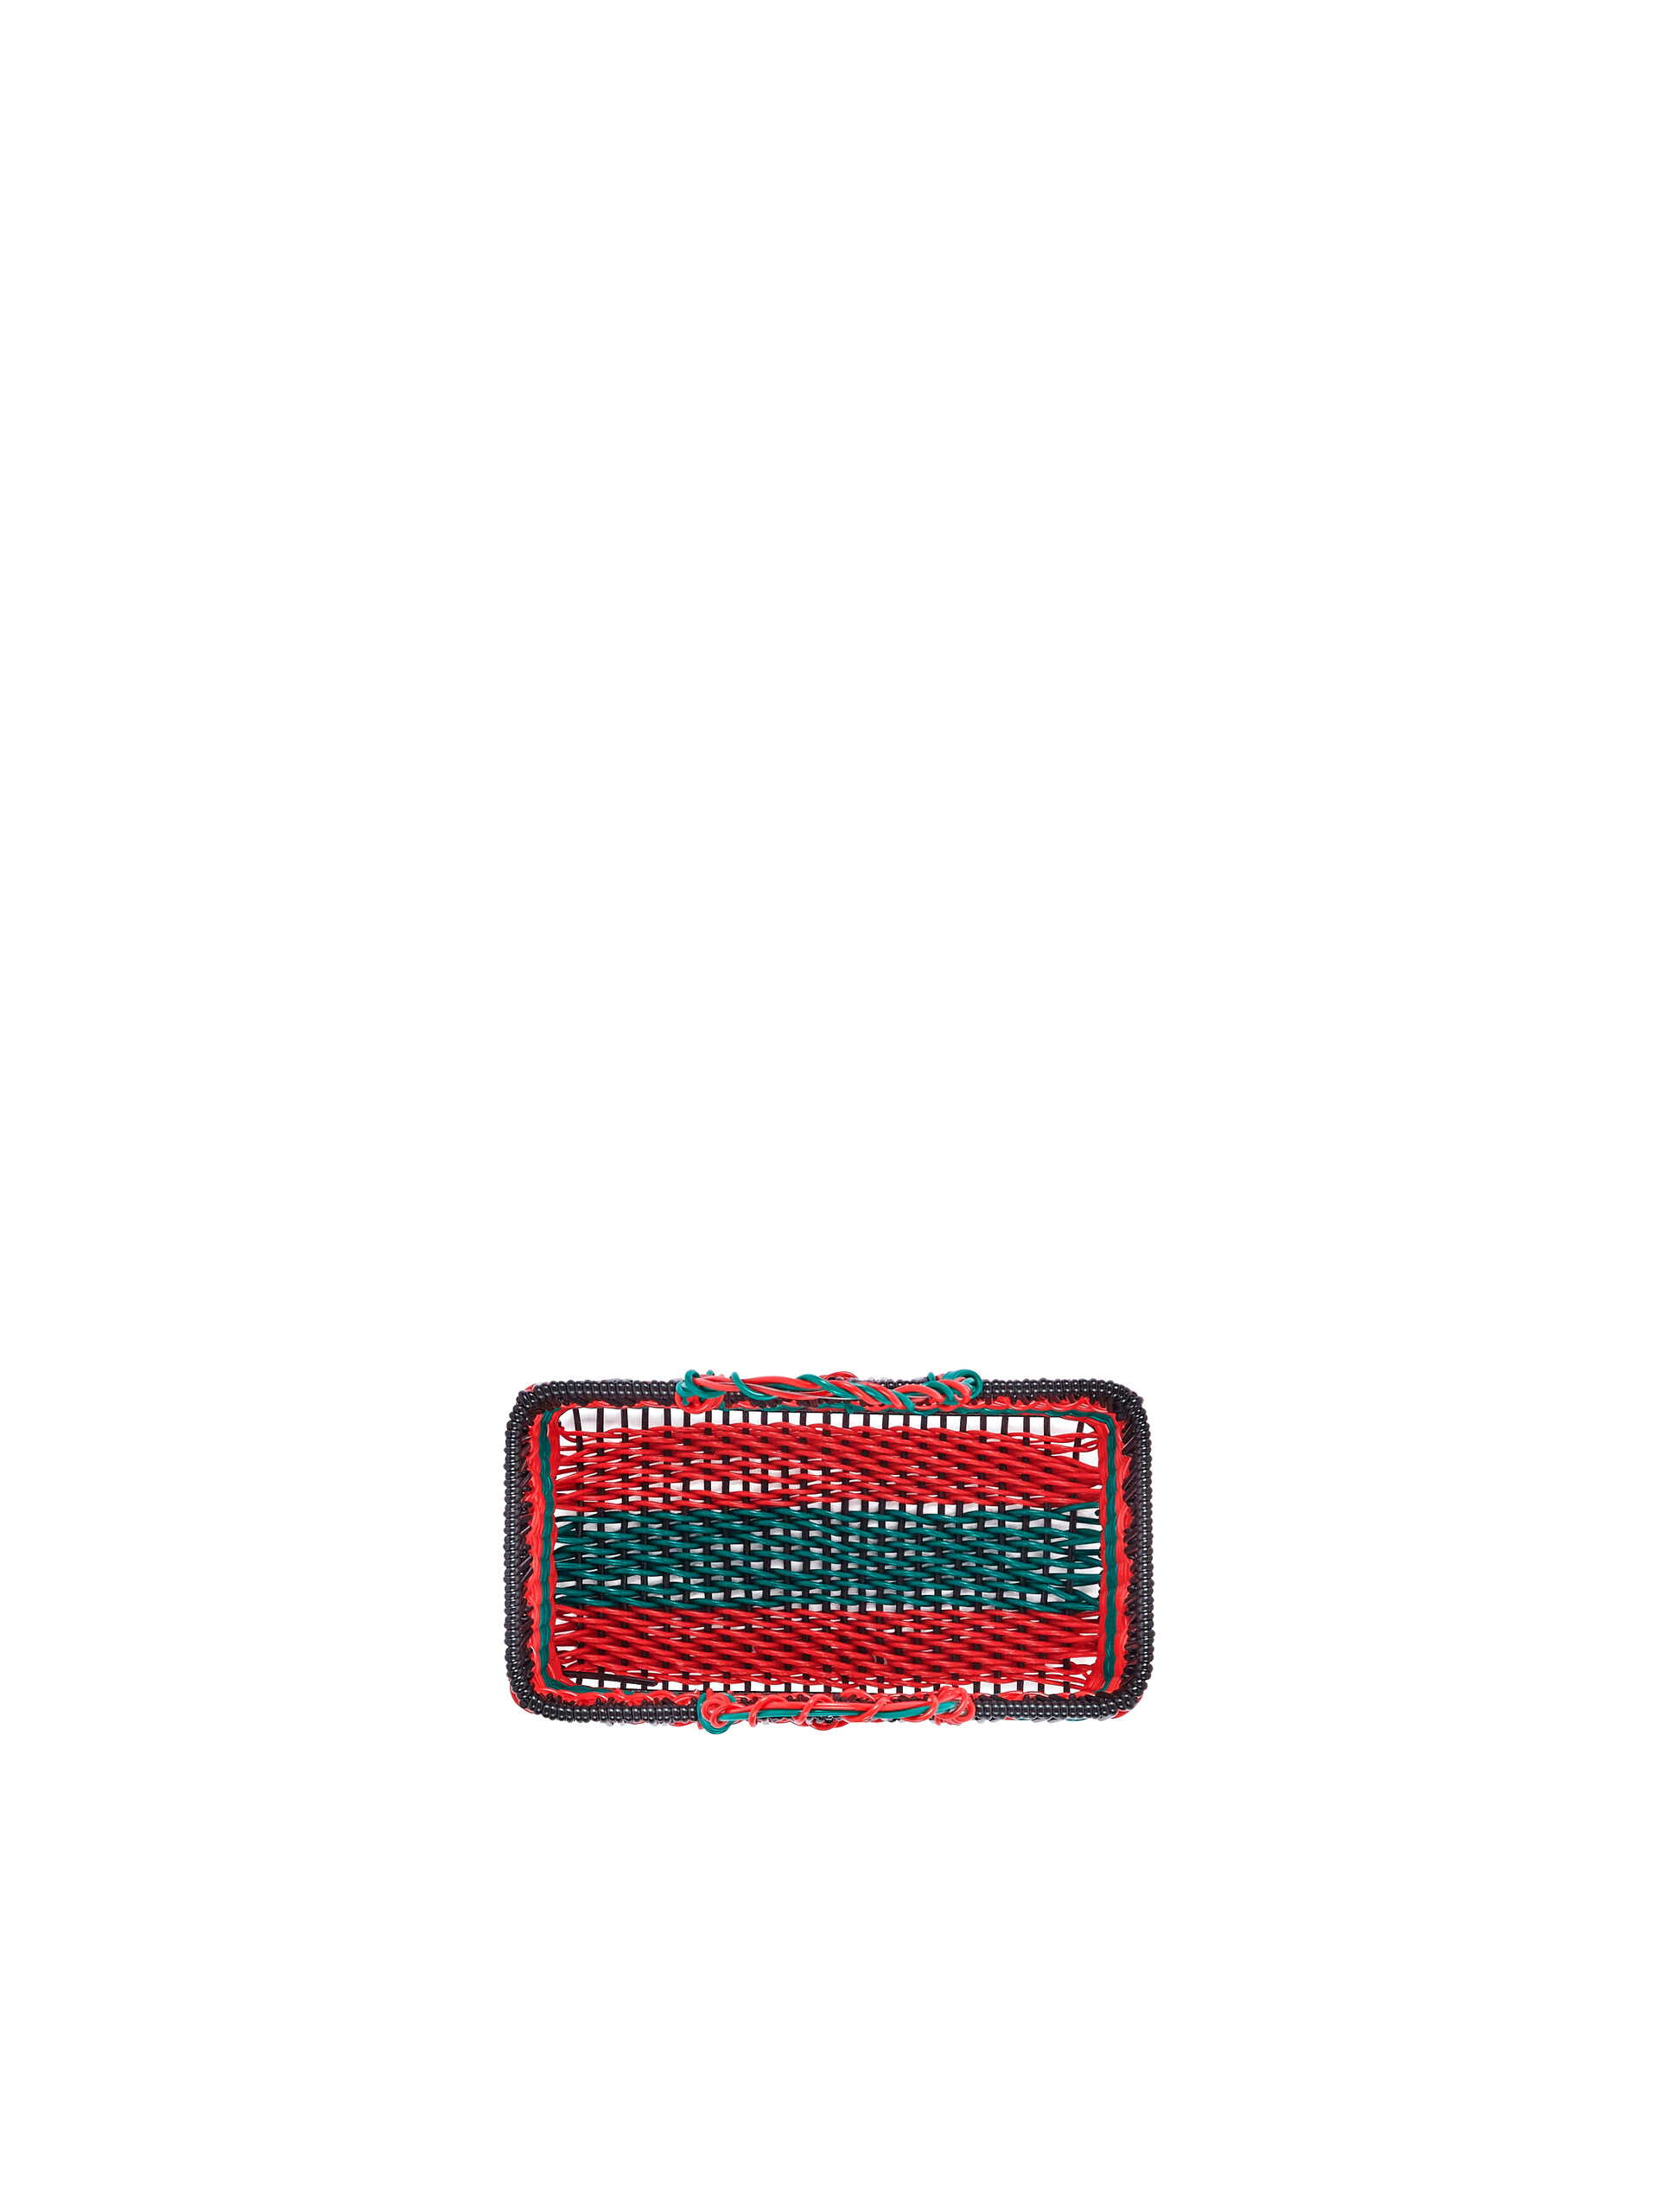 Cesto MARNI MARKET in ferro e PVC  verde e rosso - Home Accessories - Image 4